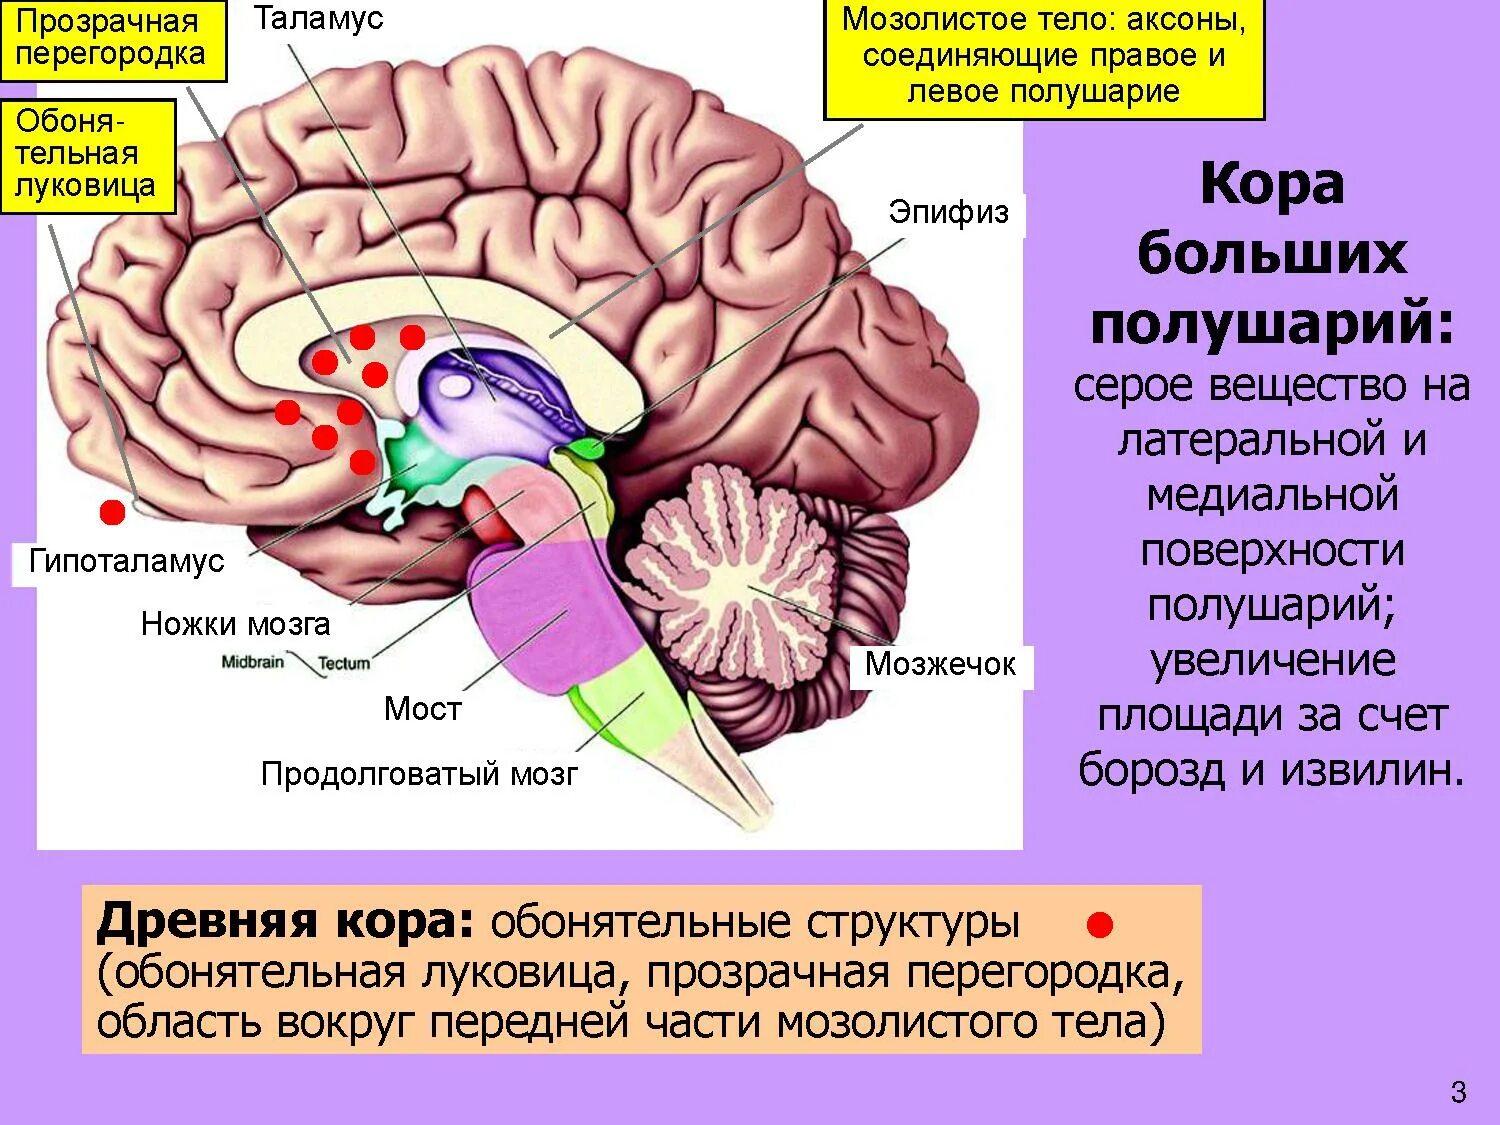 Спайки головного мозга. Мозолистое тело конечного мозга функции. Прозрачная перегородка мозга анатомия. Строение мозолистого тела головного мозга. Таламус, гипоталамус, мост, мозжечок, продолговатый мозг..